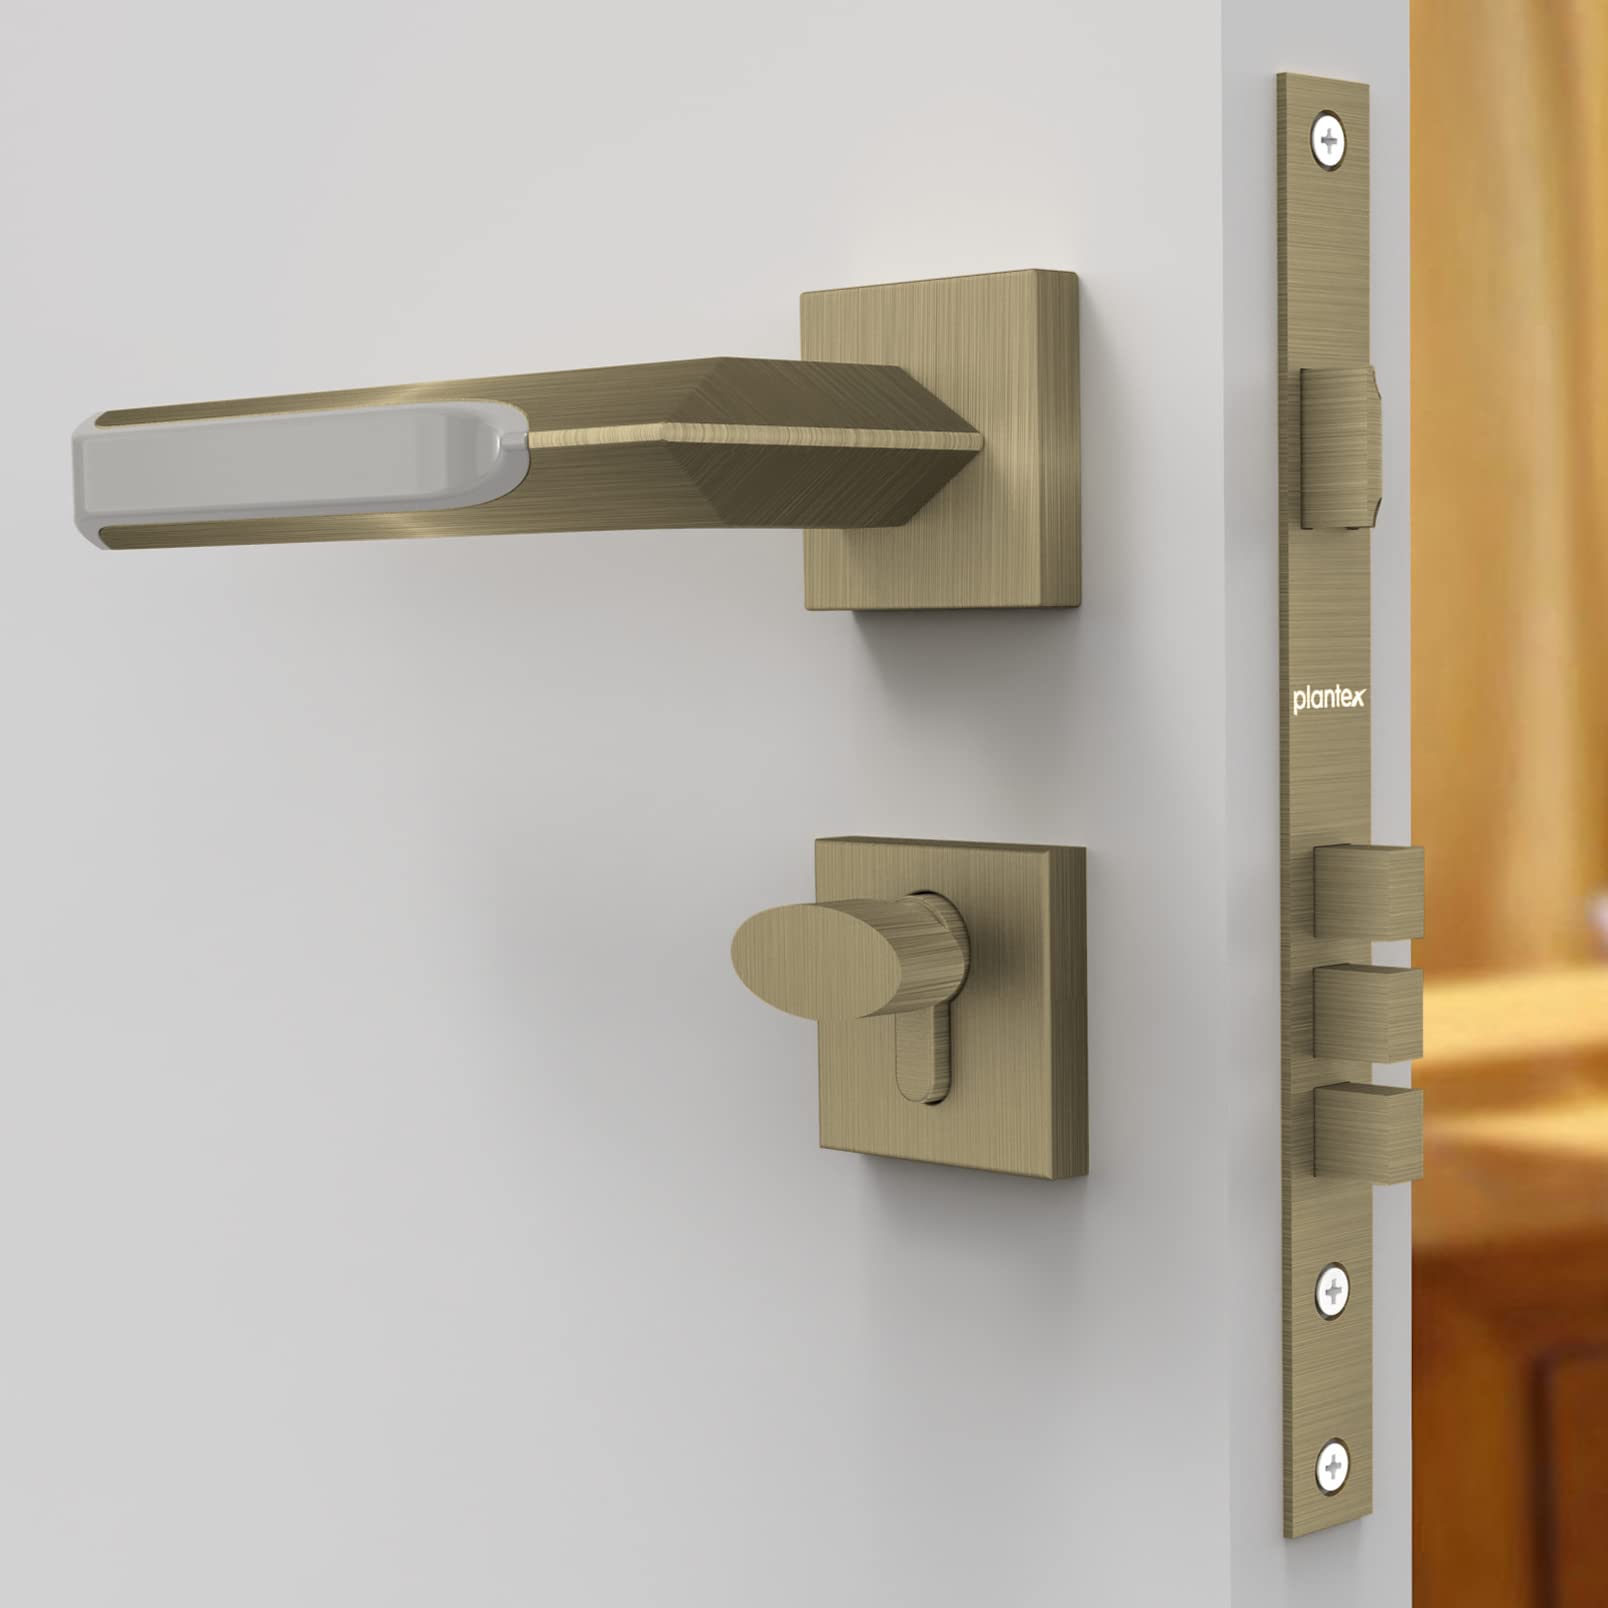 Plantex 7082 Premium Heavy Duty Mortise Door Lock with Door Handle Lock Set Body for Home Main Door with Pull/Push Handle for Bedroom/Office/Hotel with 3 Keys (Brass Antique and Satin Black-Matt)